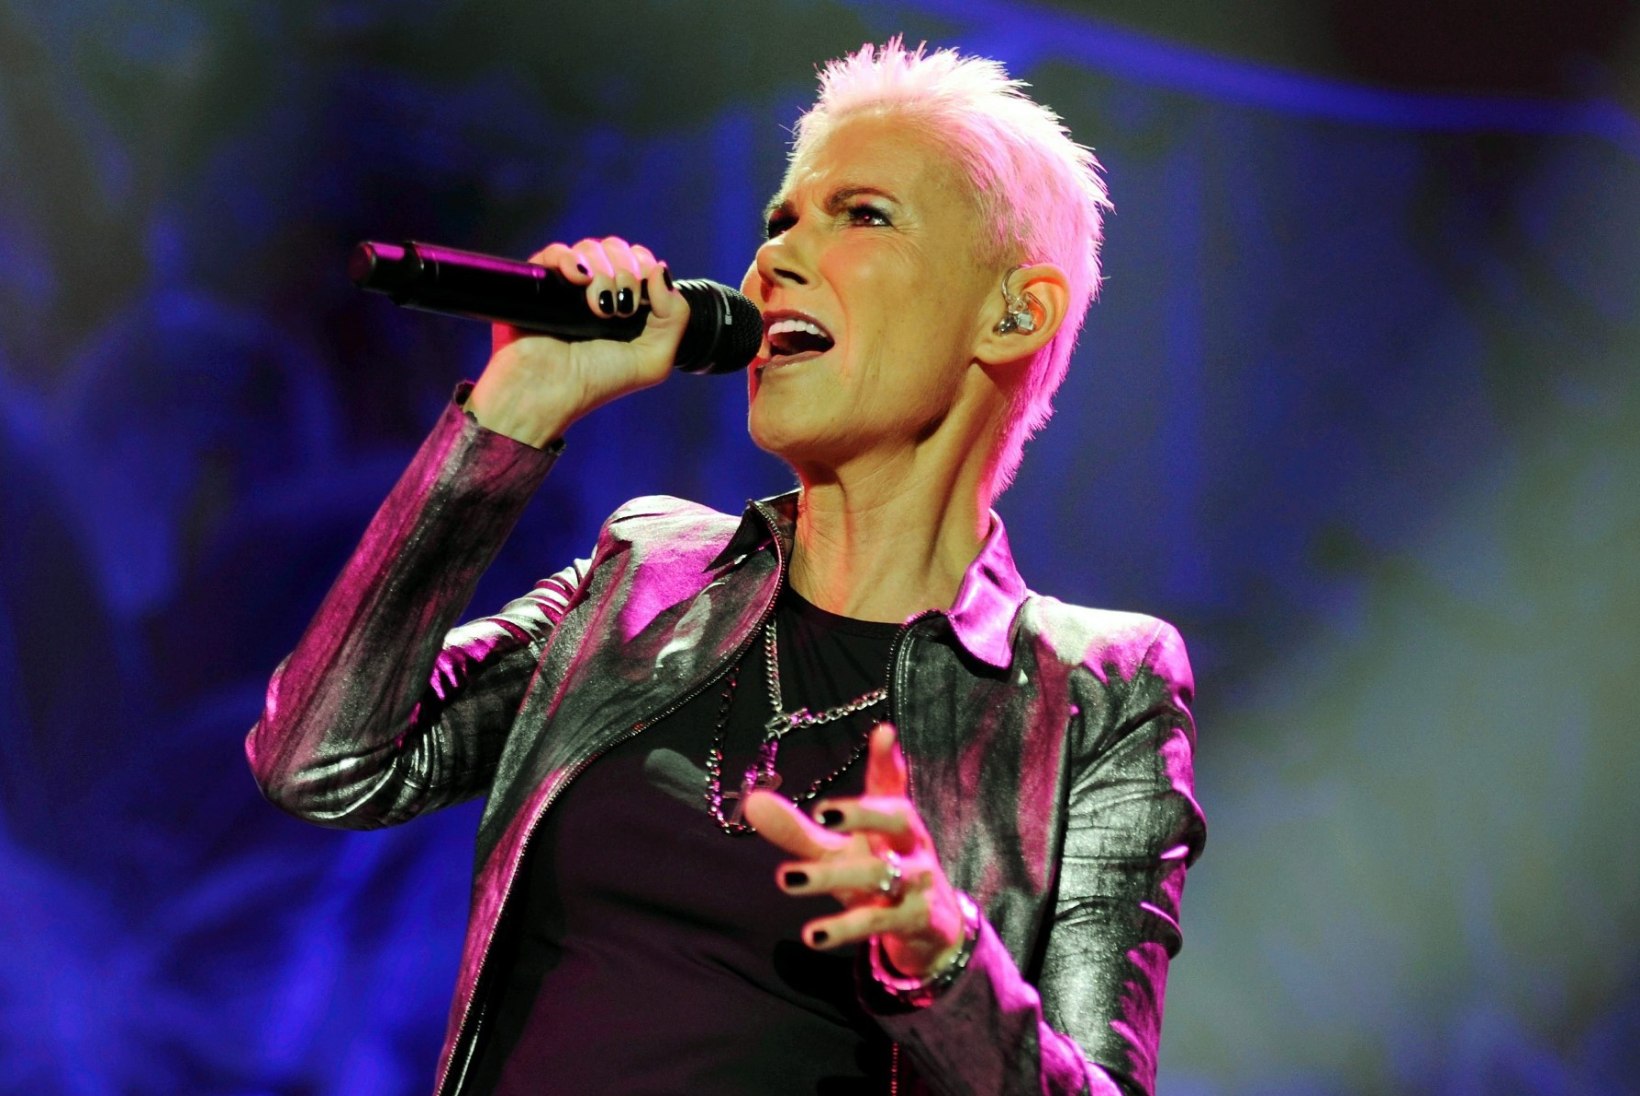 Rootsi tippartistid andsid Roxette’i lauljanna mälestuseks liigutava kontserdi